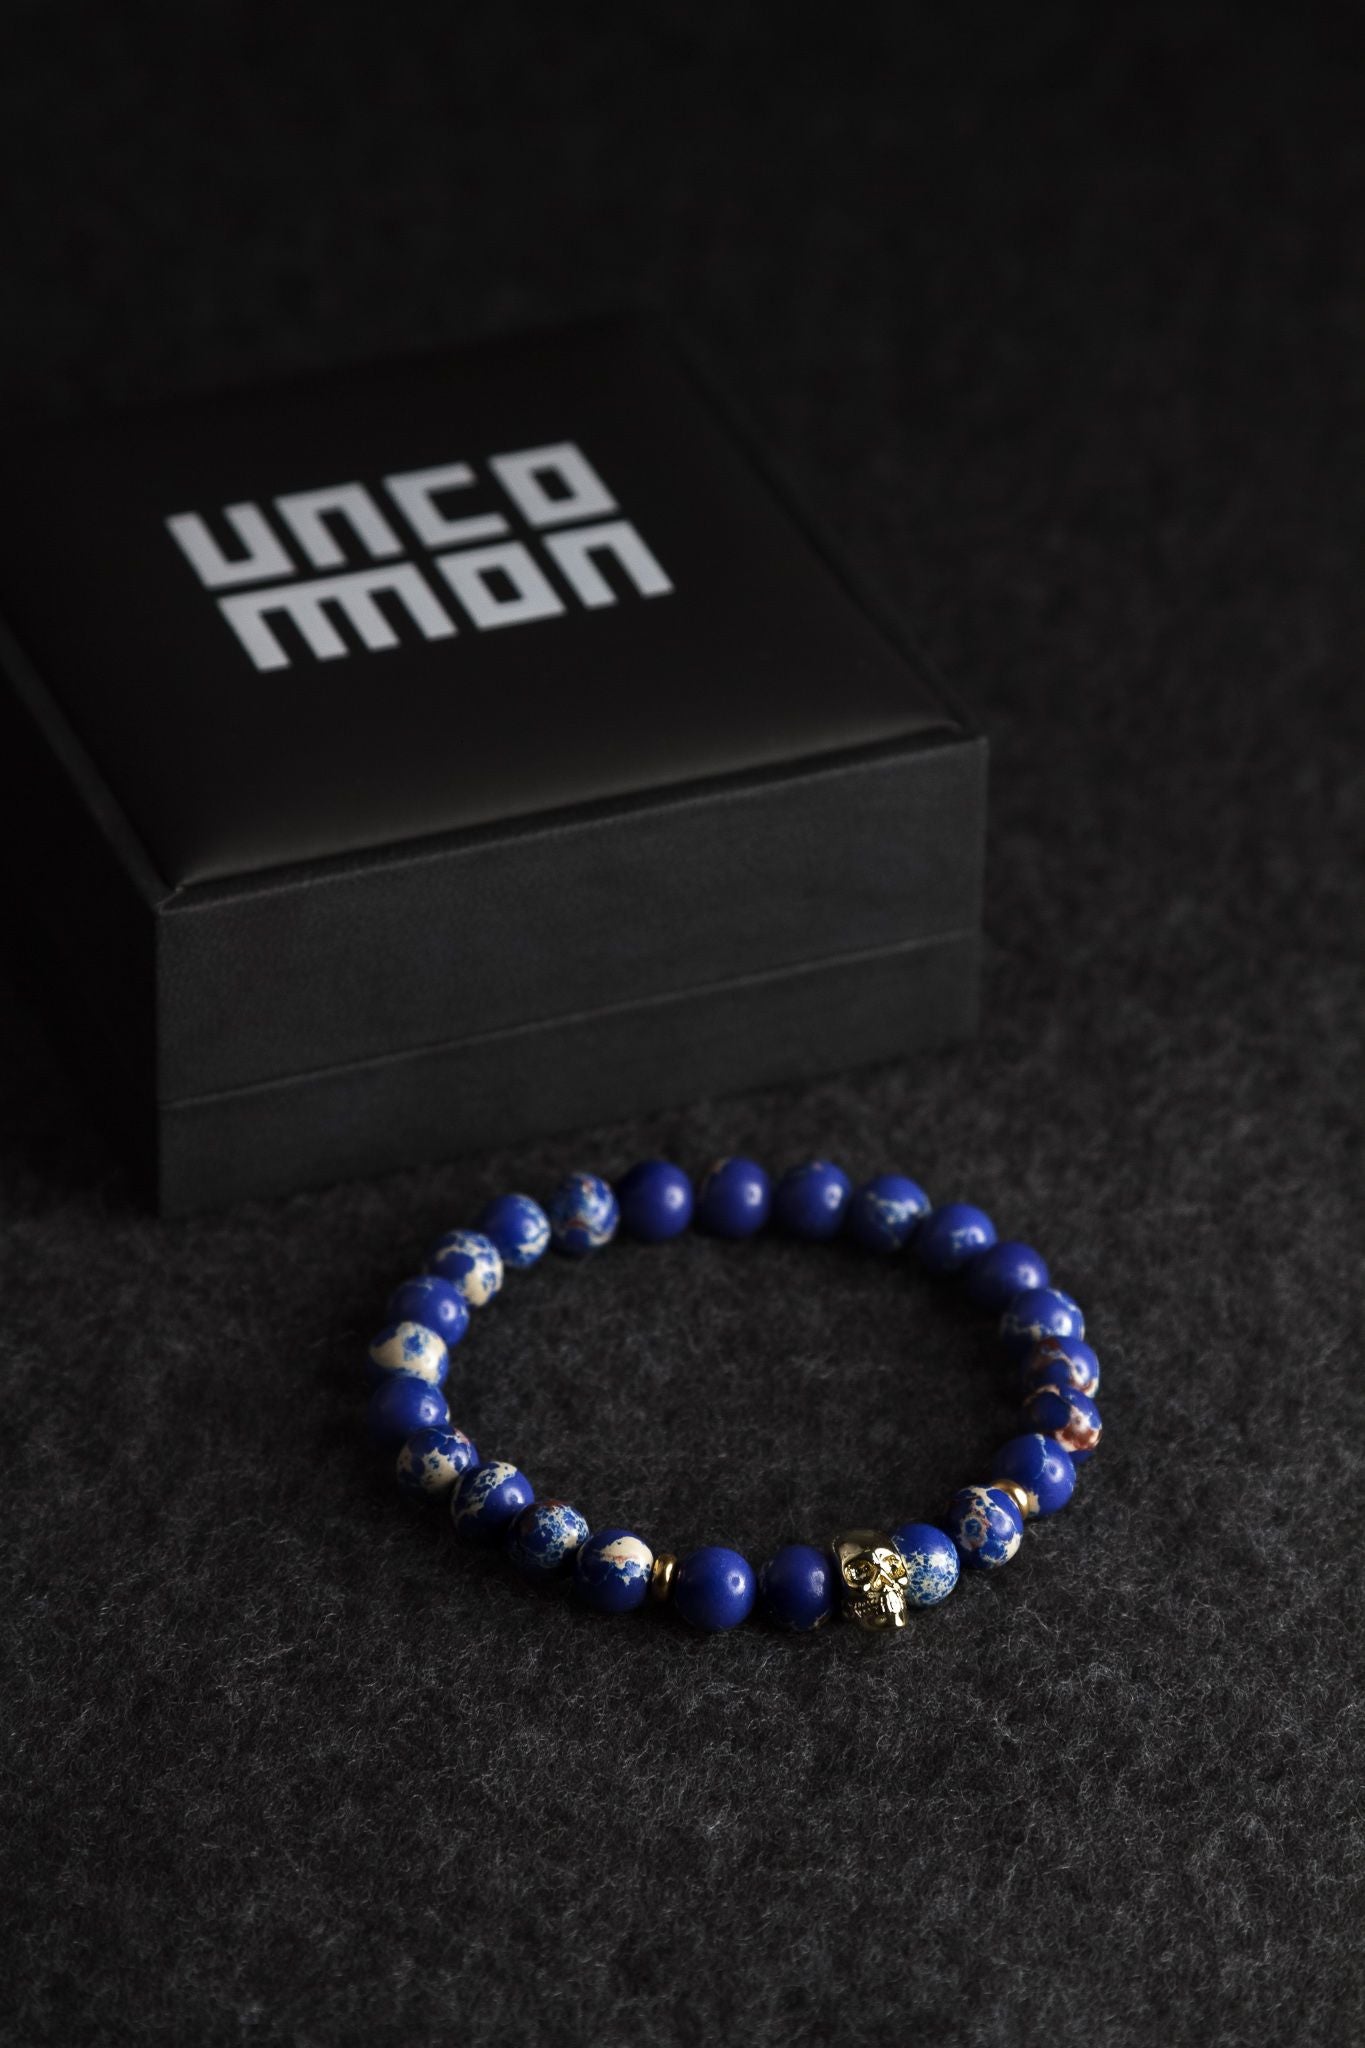 UNCOMMON Men's Beads Bracelet One Gold Skull Charm Blue Jasper Beads